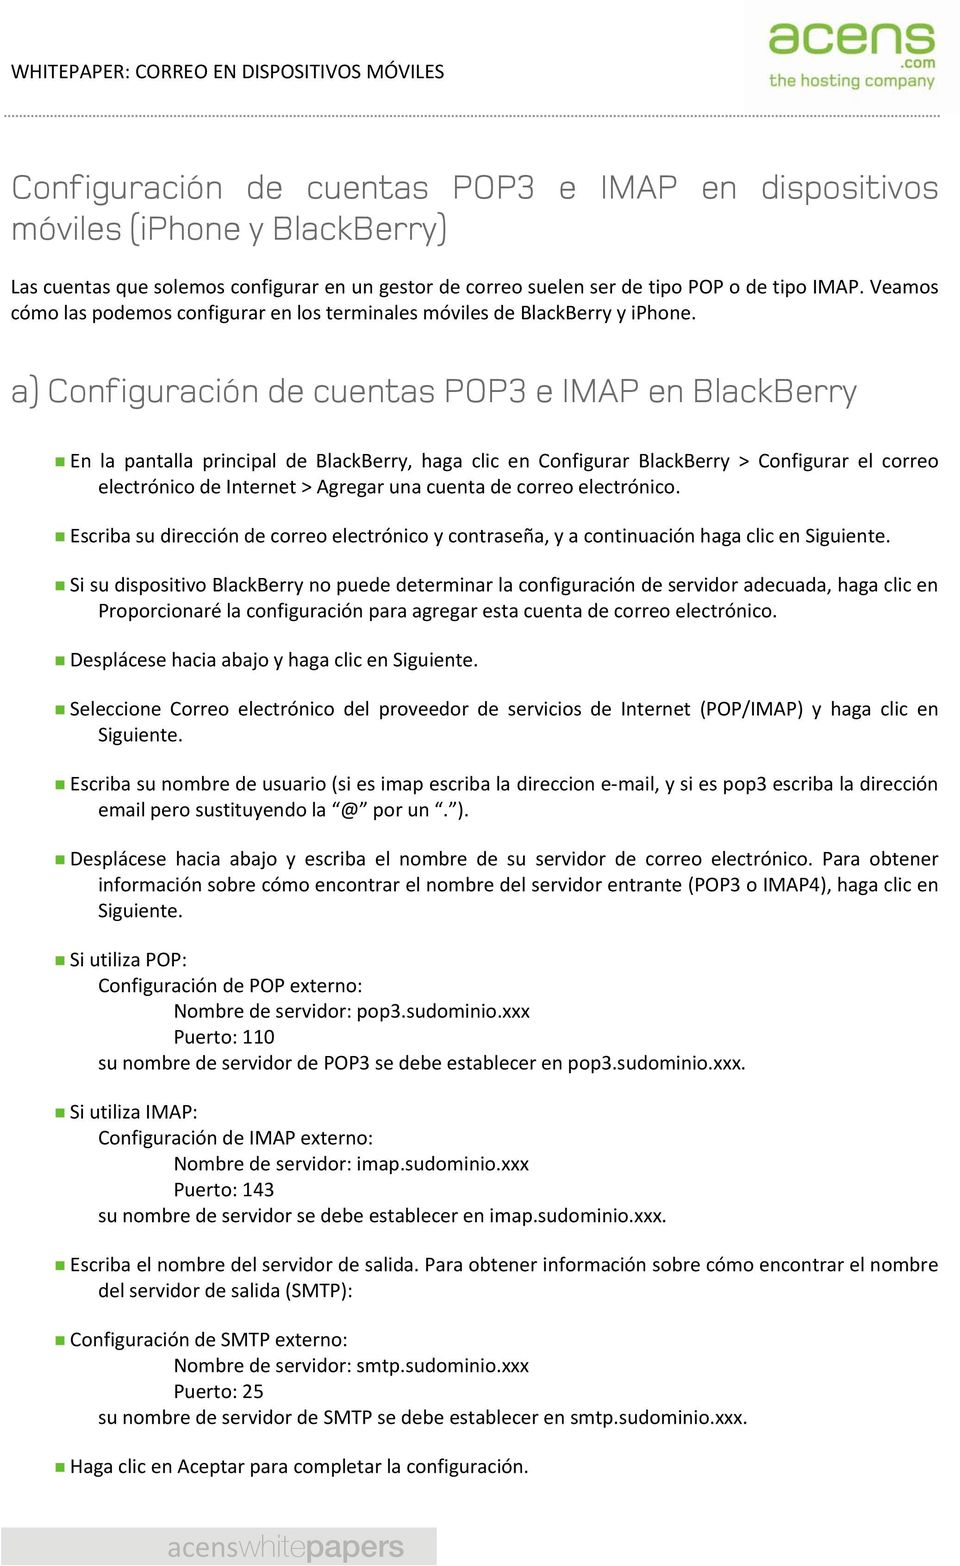 a) Configuración de cuentas POP3 e IMAP en BlackBerry En la pantalla principal de BlackBerry, haga clic en Configurar BlackBerry > Configurar el correo electrónico de Internet > Agregar una cuenta de